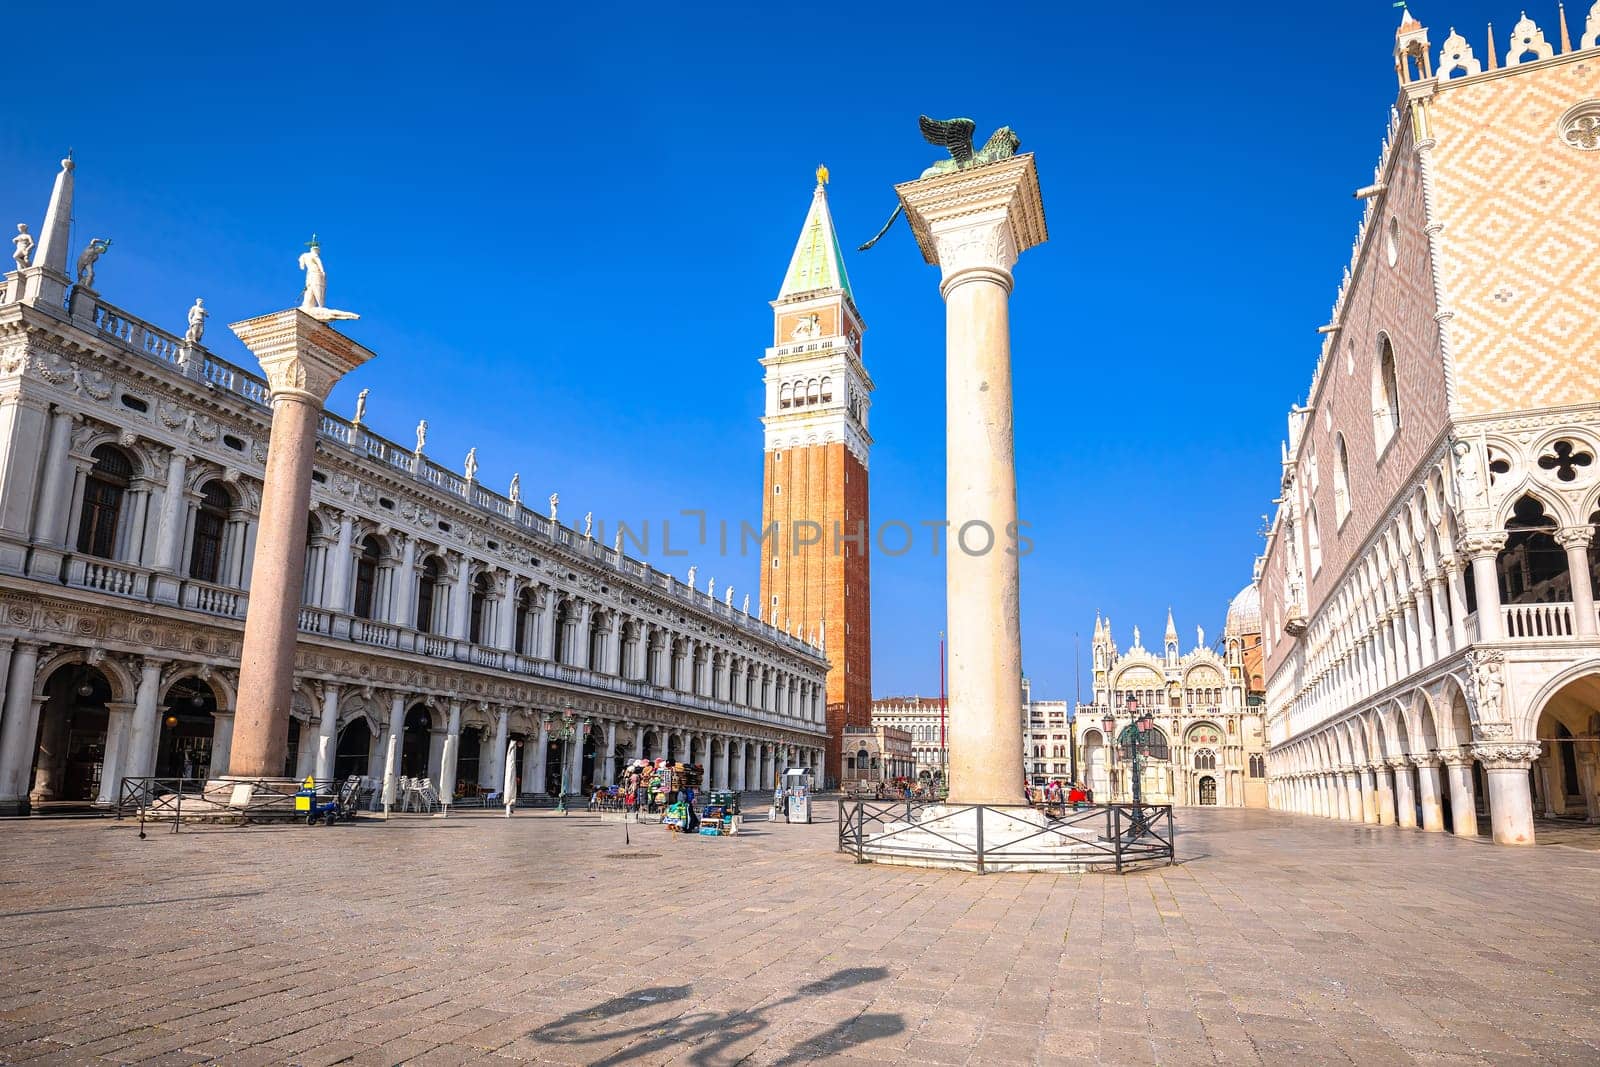 Piazza San Marco square in Venice scenic architecture view, tourist destination of Italy